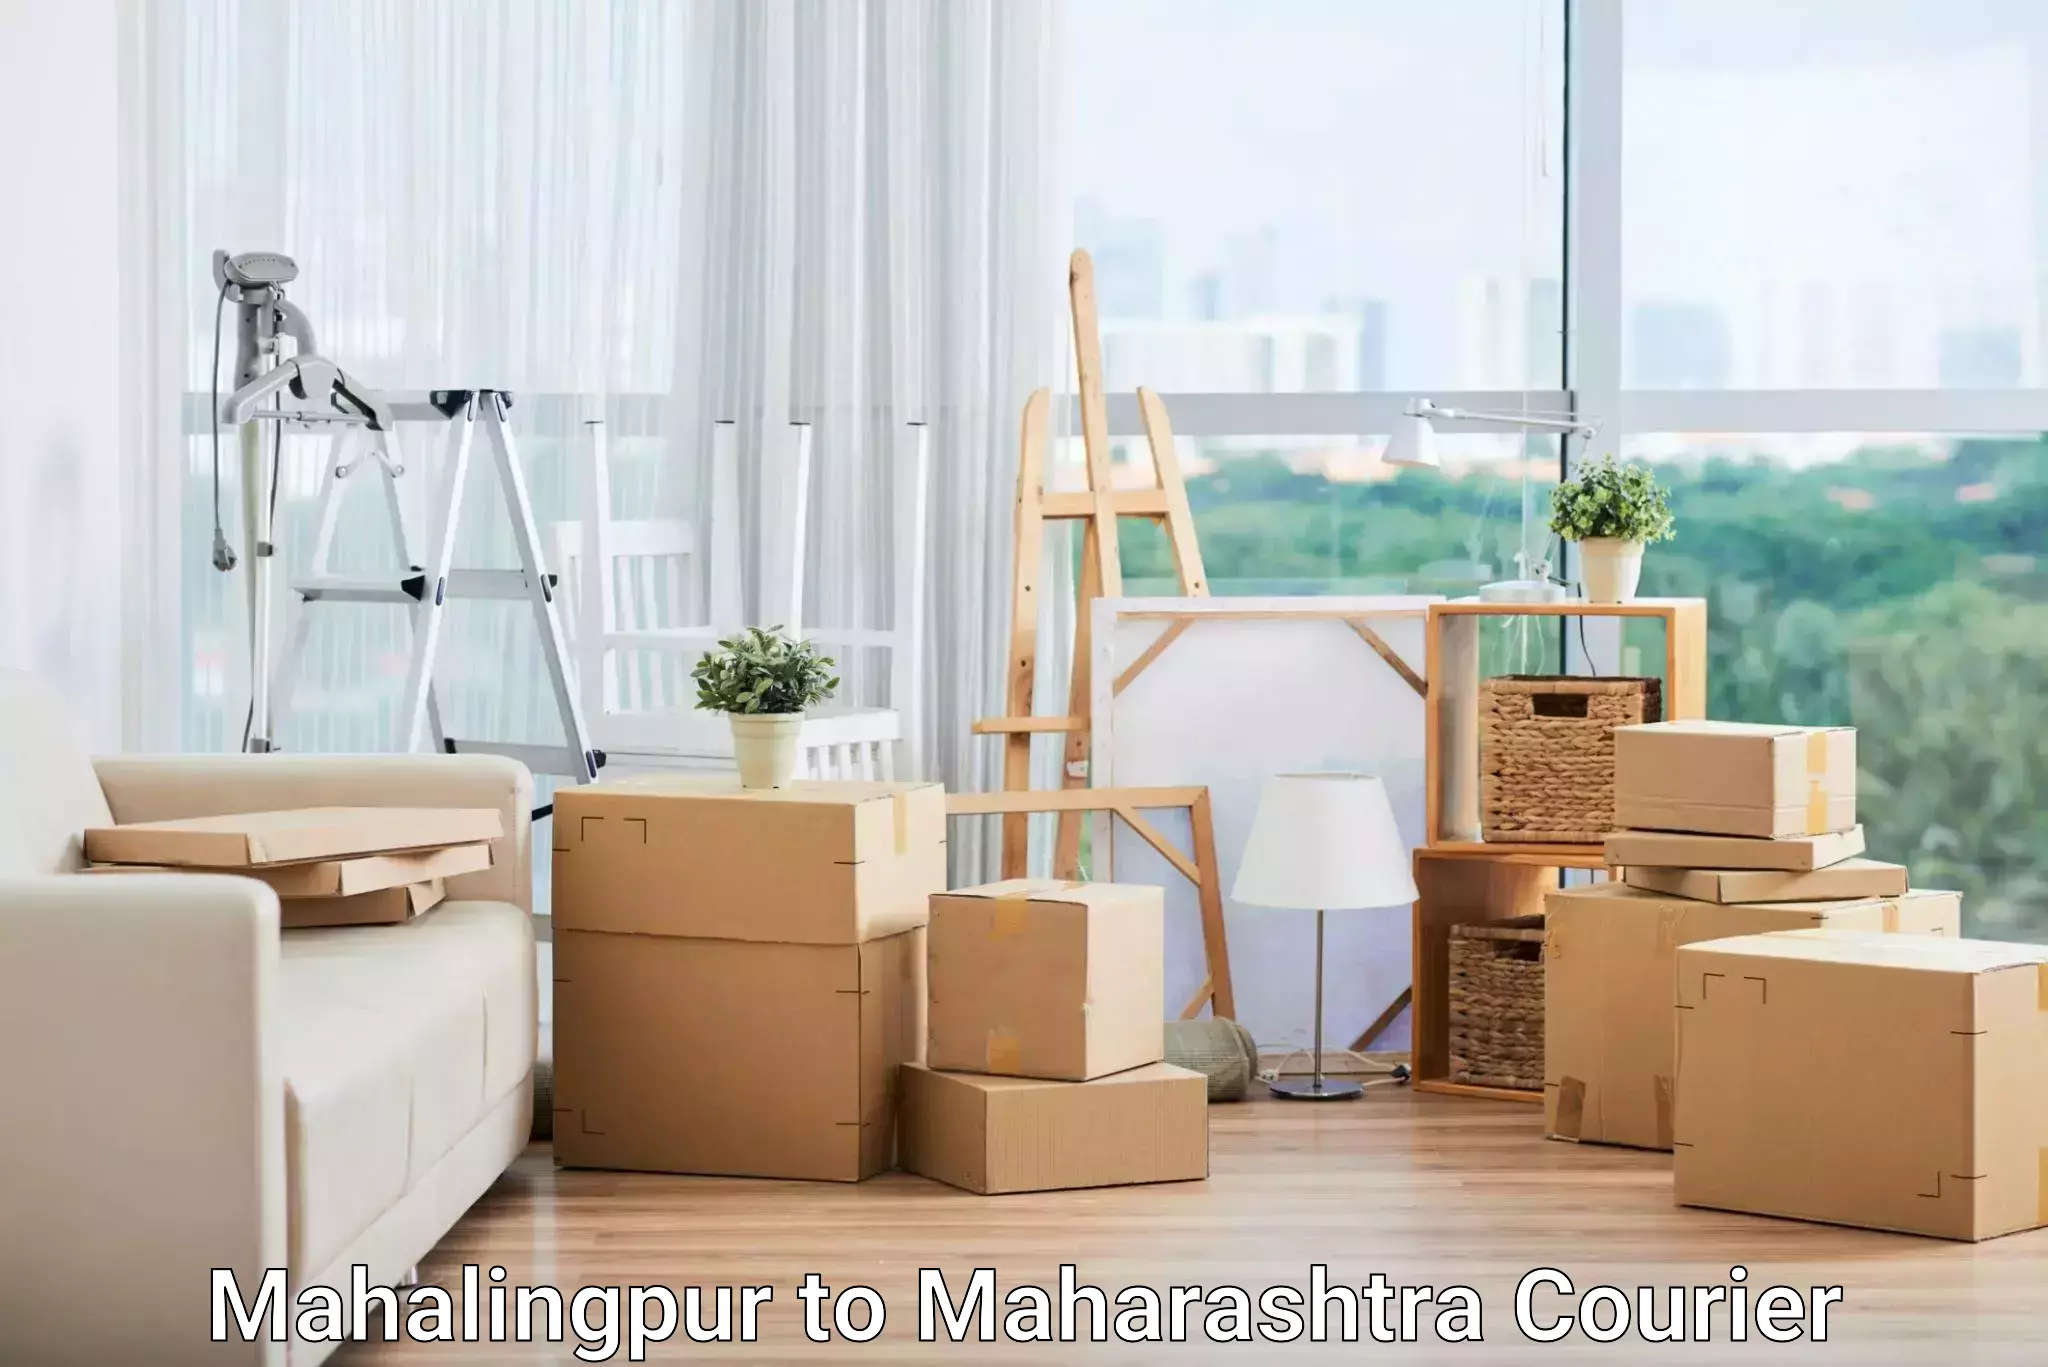 Global shipping networks Mahalingpur to Walchandnagar